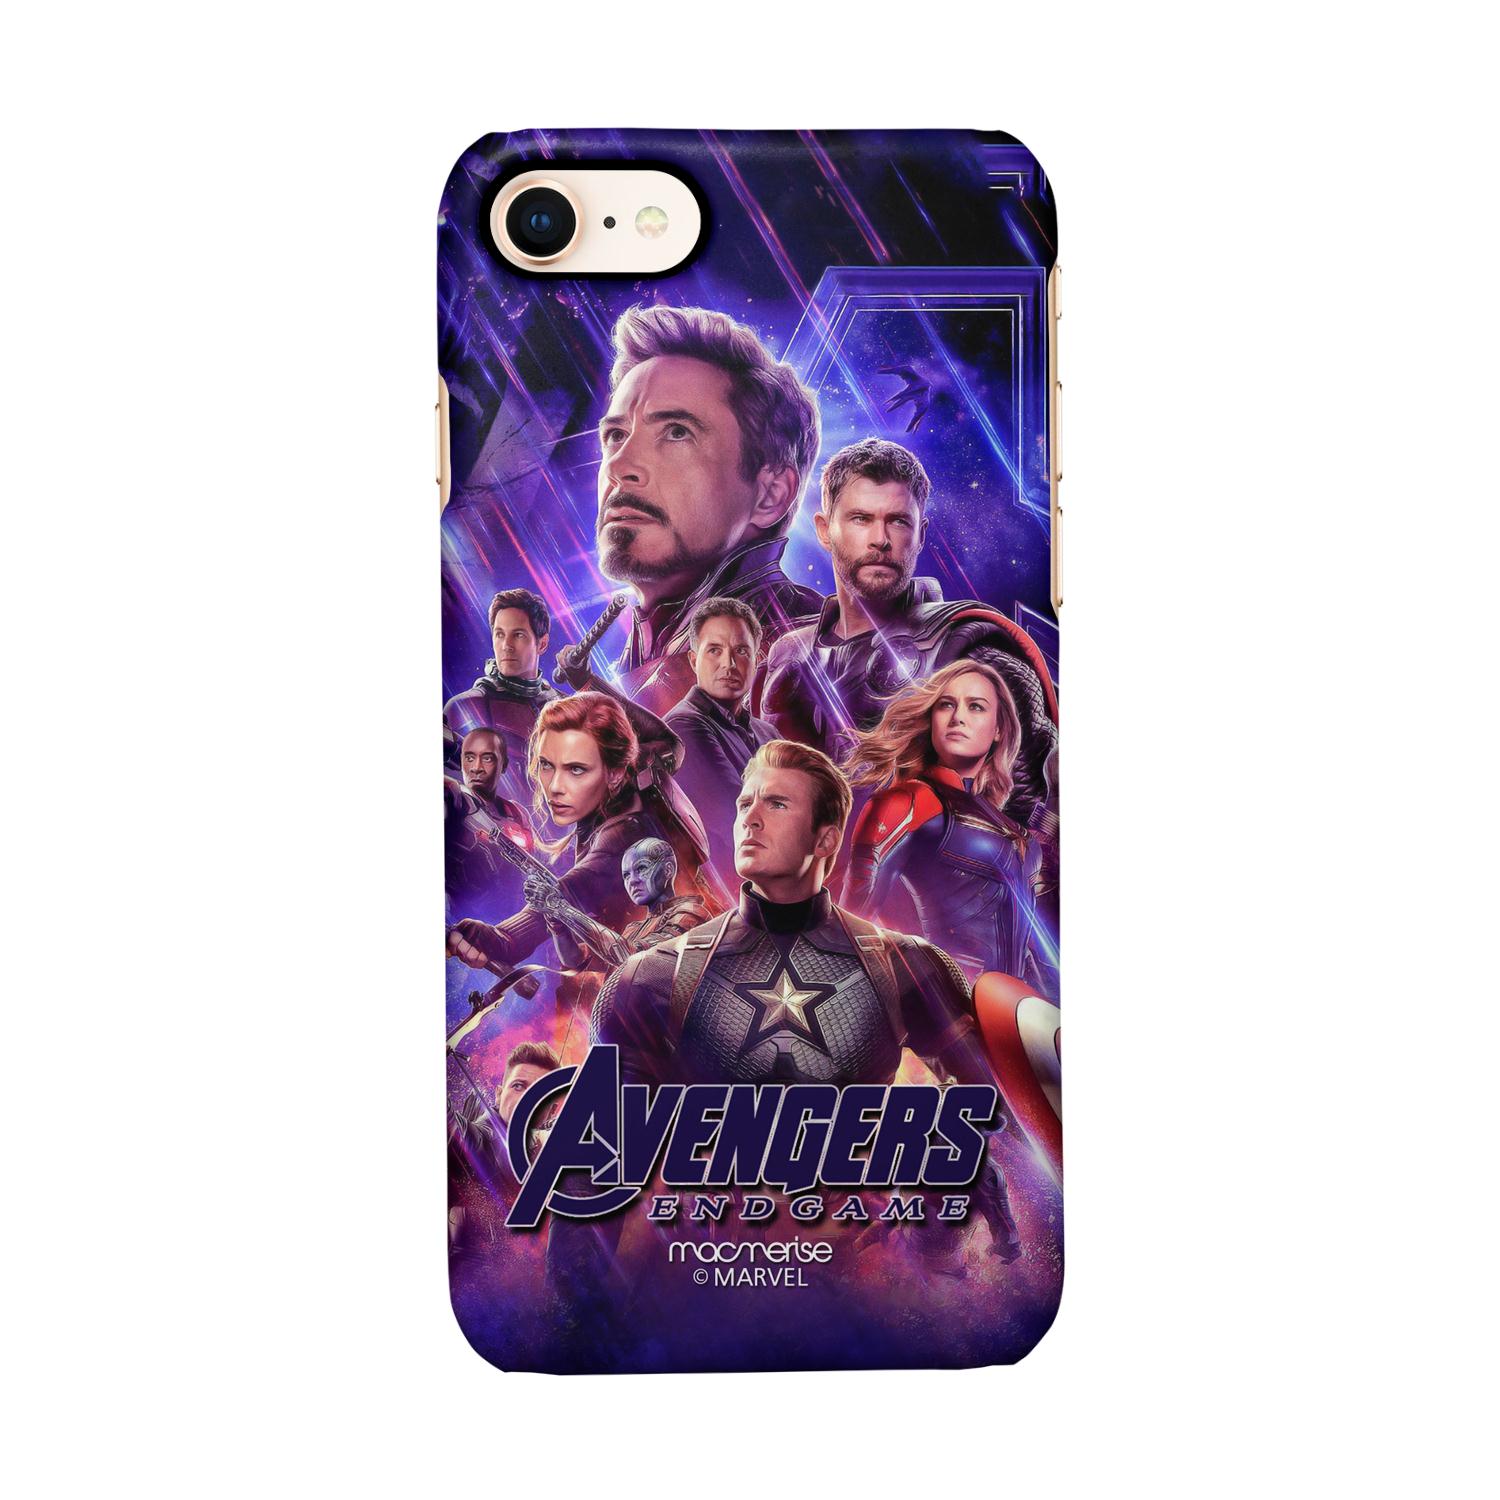 Buy Avengers Endgame Poster - Sleek Phone Case for iPhone 8 Online